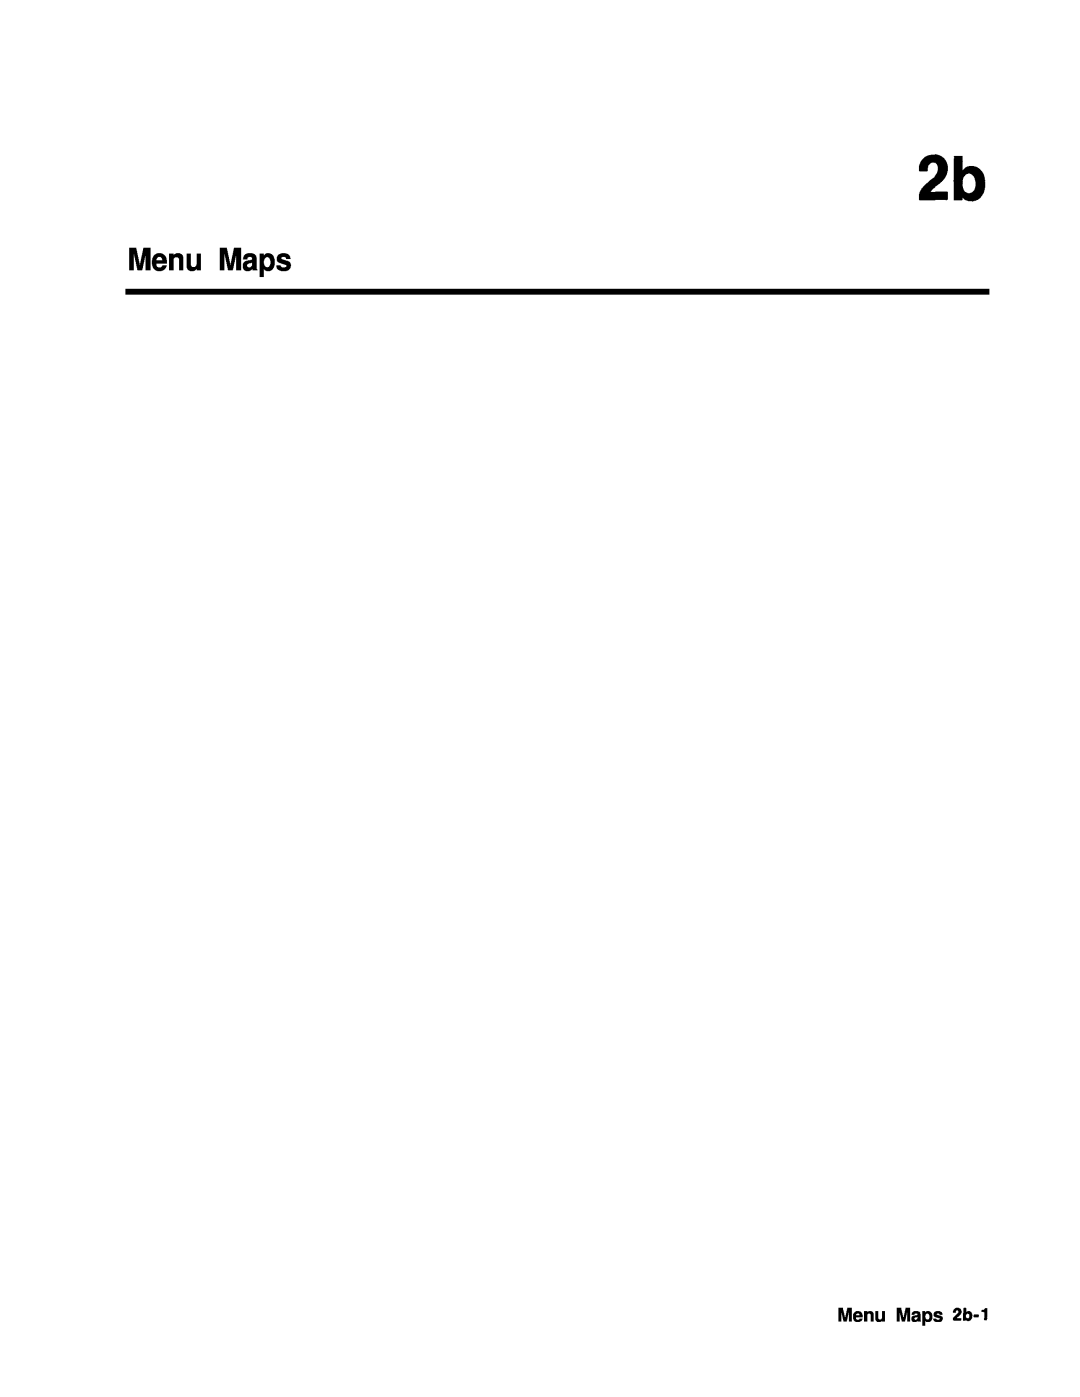 HP 24A, 83620A, 22A manual Menu Maps 2b-1 